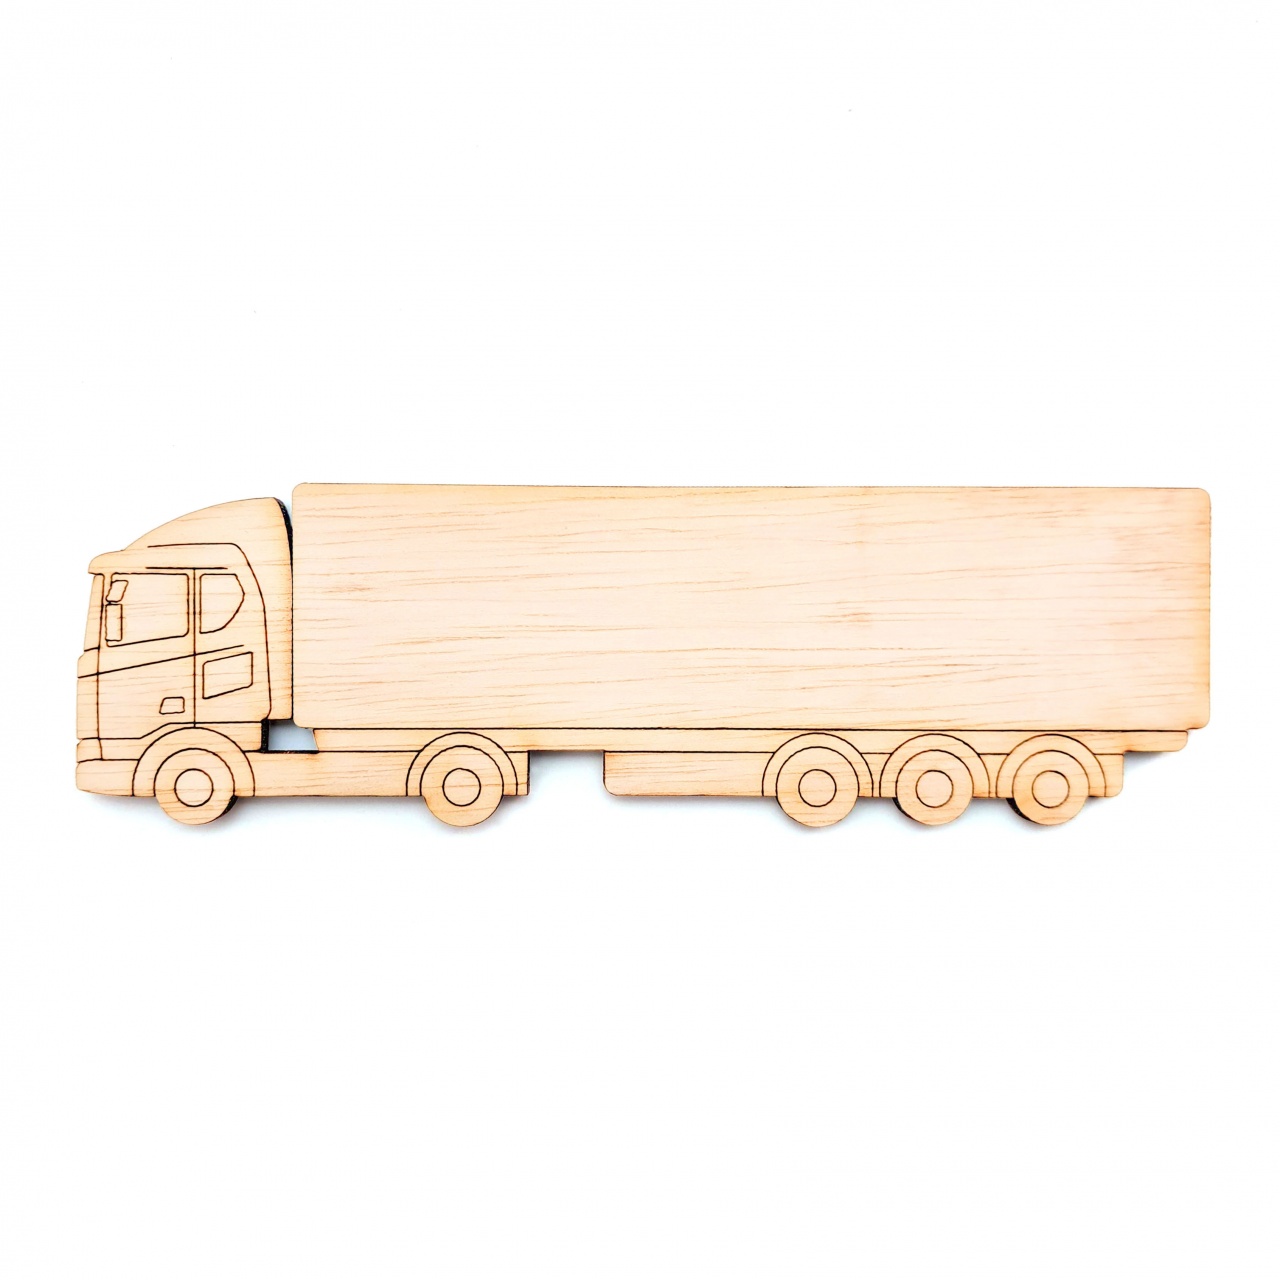 Camion TIR, 35×10,7 cm, placaj lemn